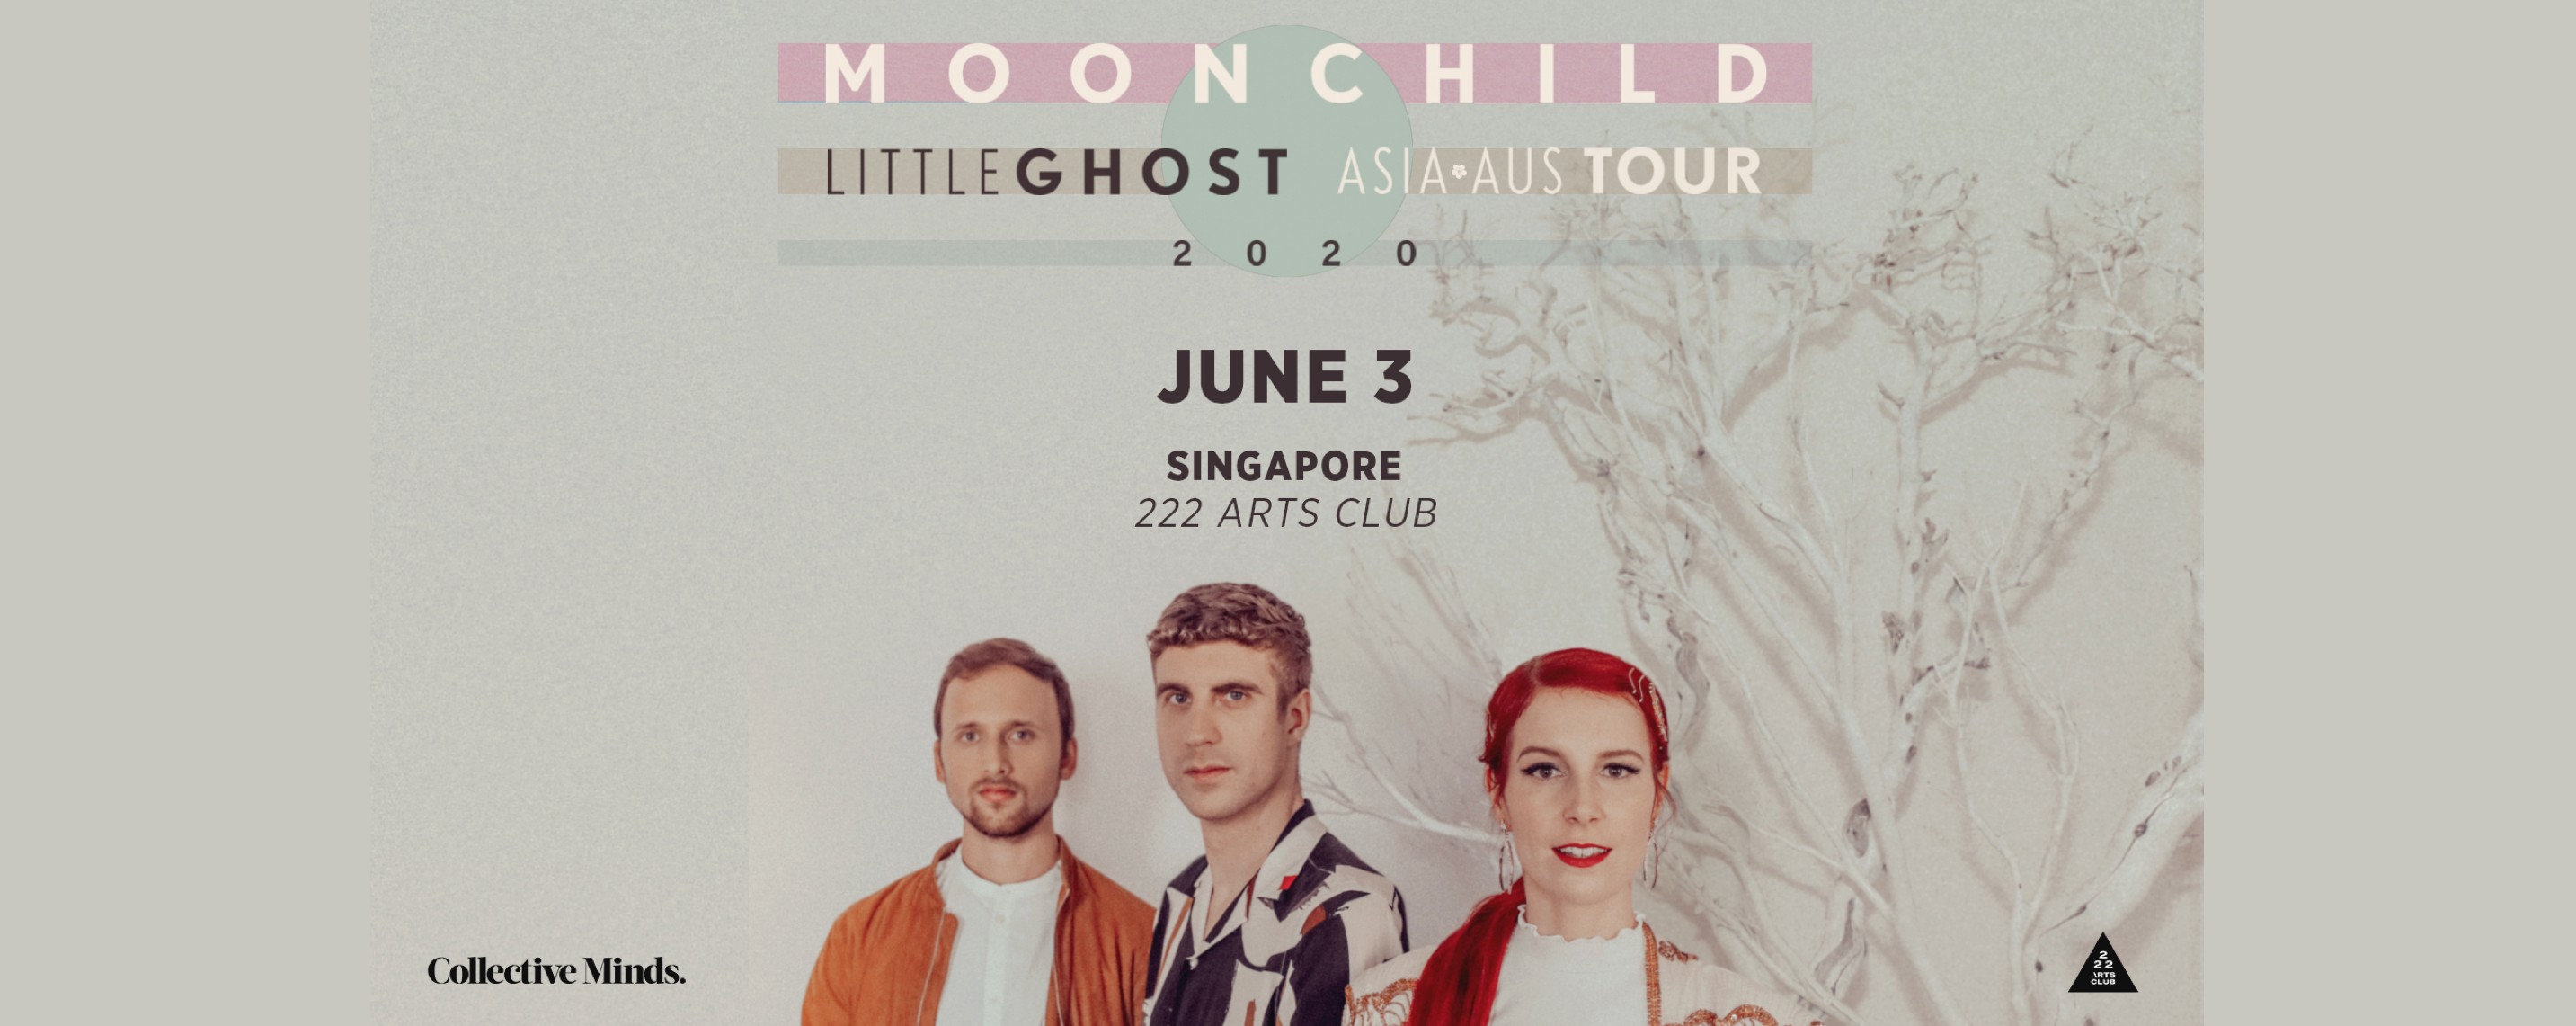 Moonchild Little Ghost Asia-Aus Tour